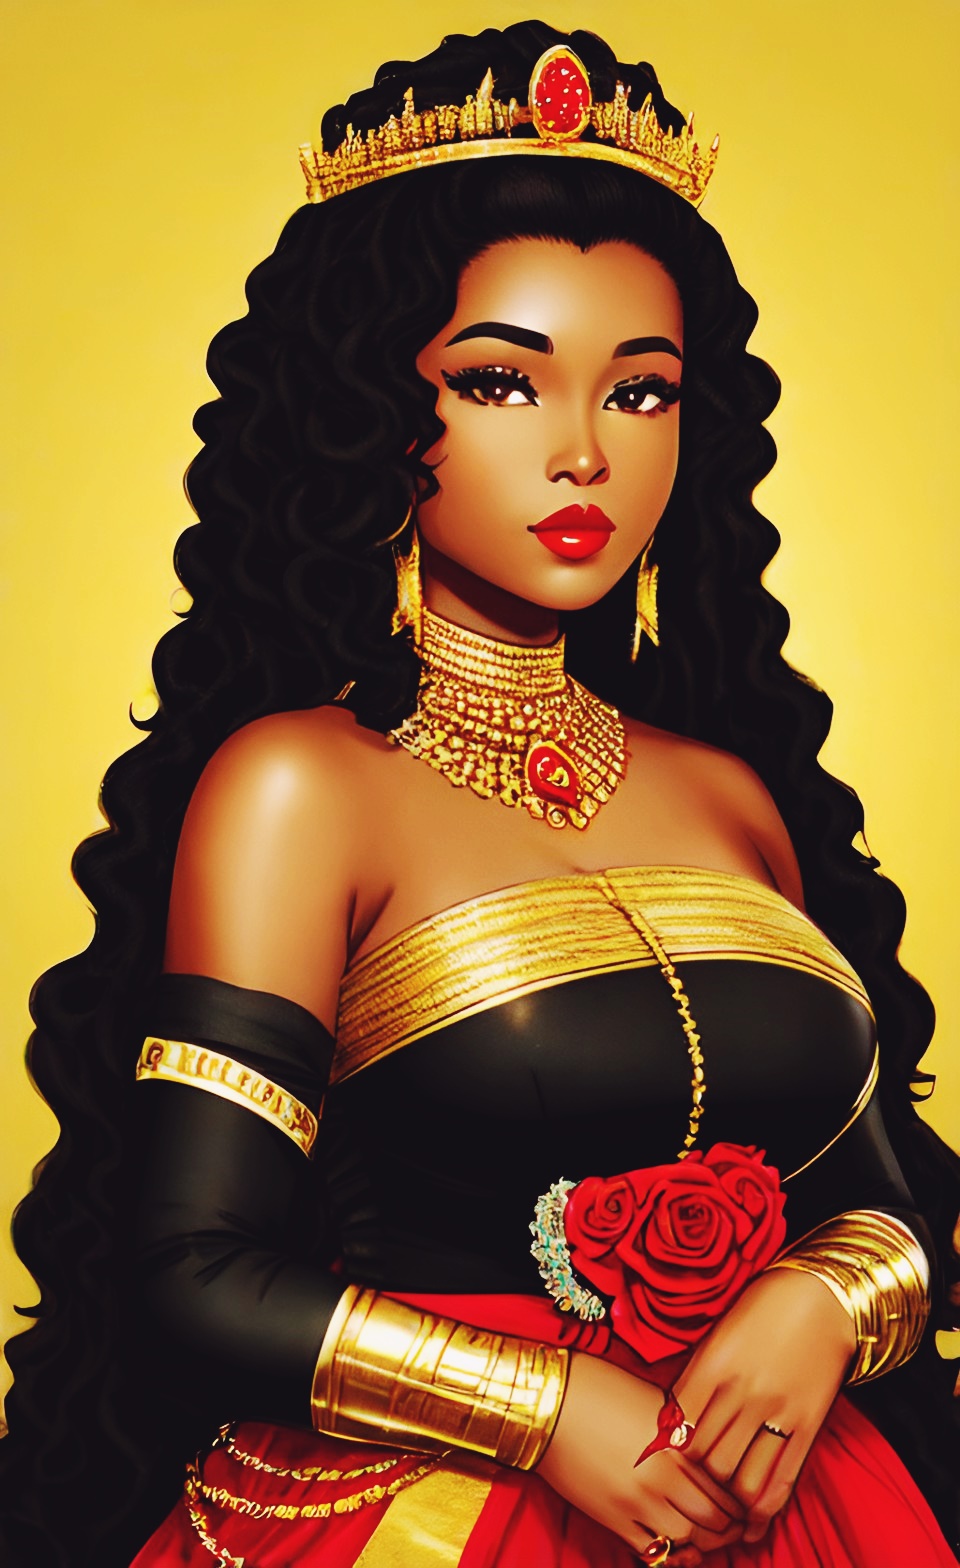 Mixed-race Queen of SHEBA art work Mixed429